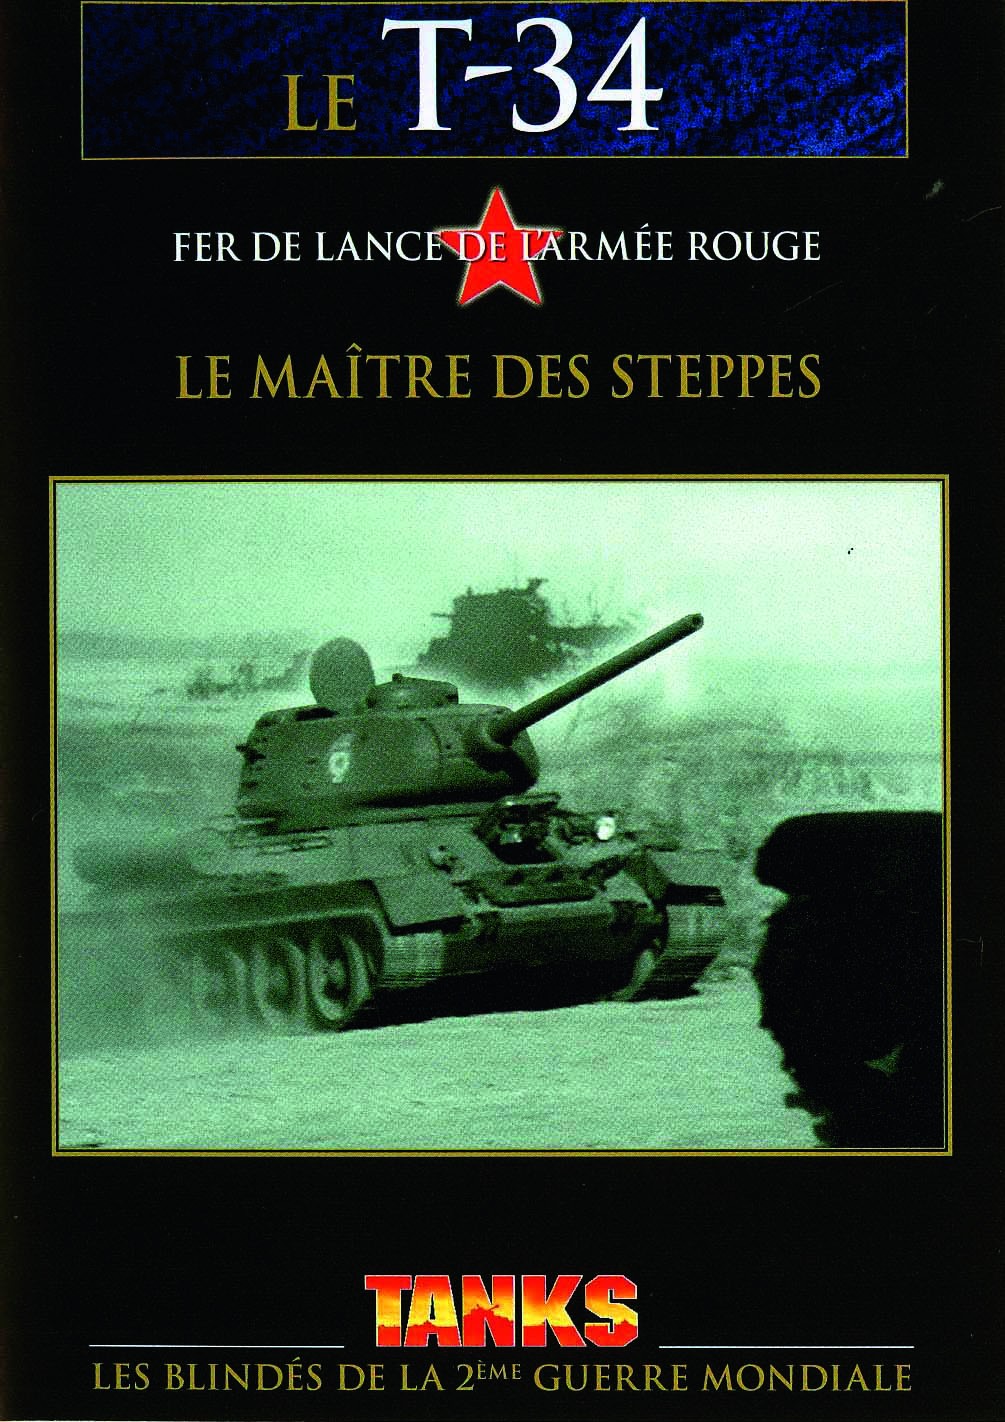 DVD Le T-34 Le maître des steppes